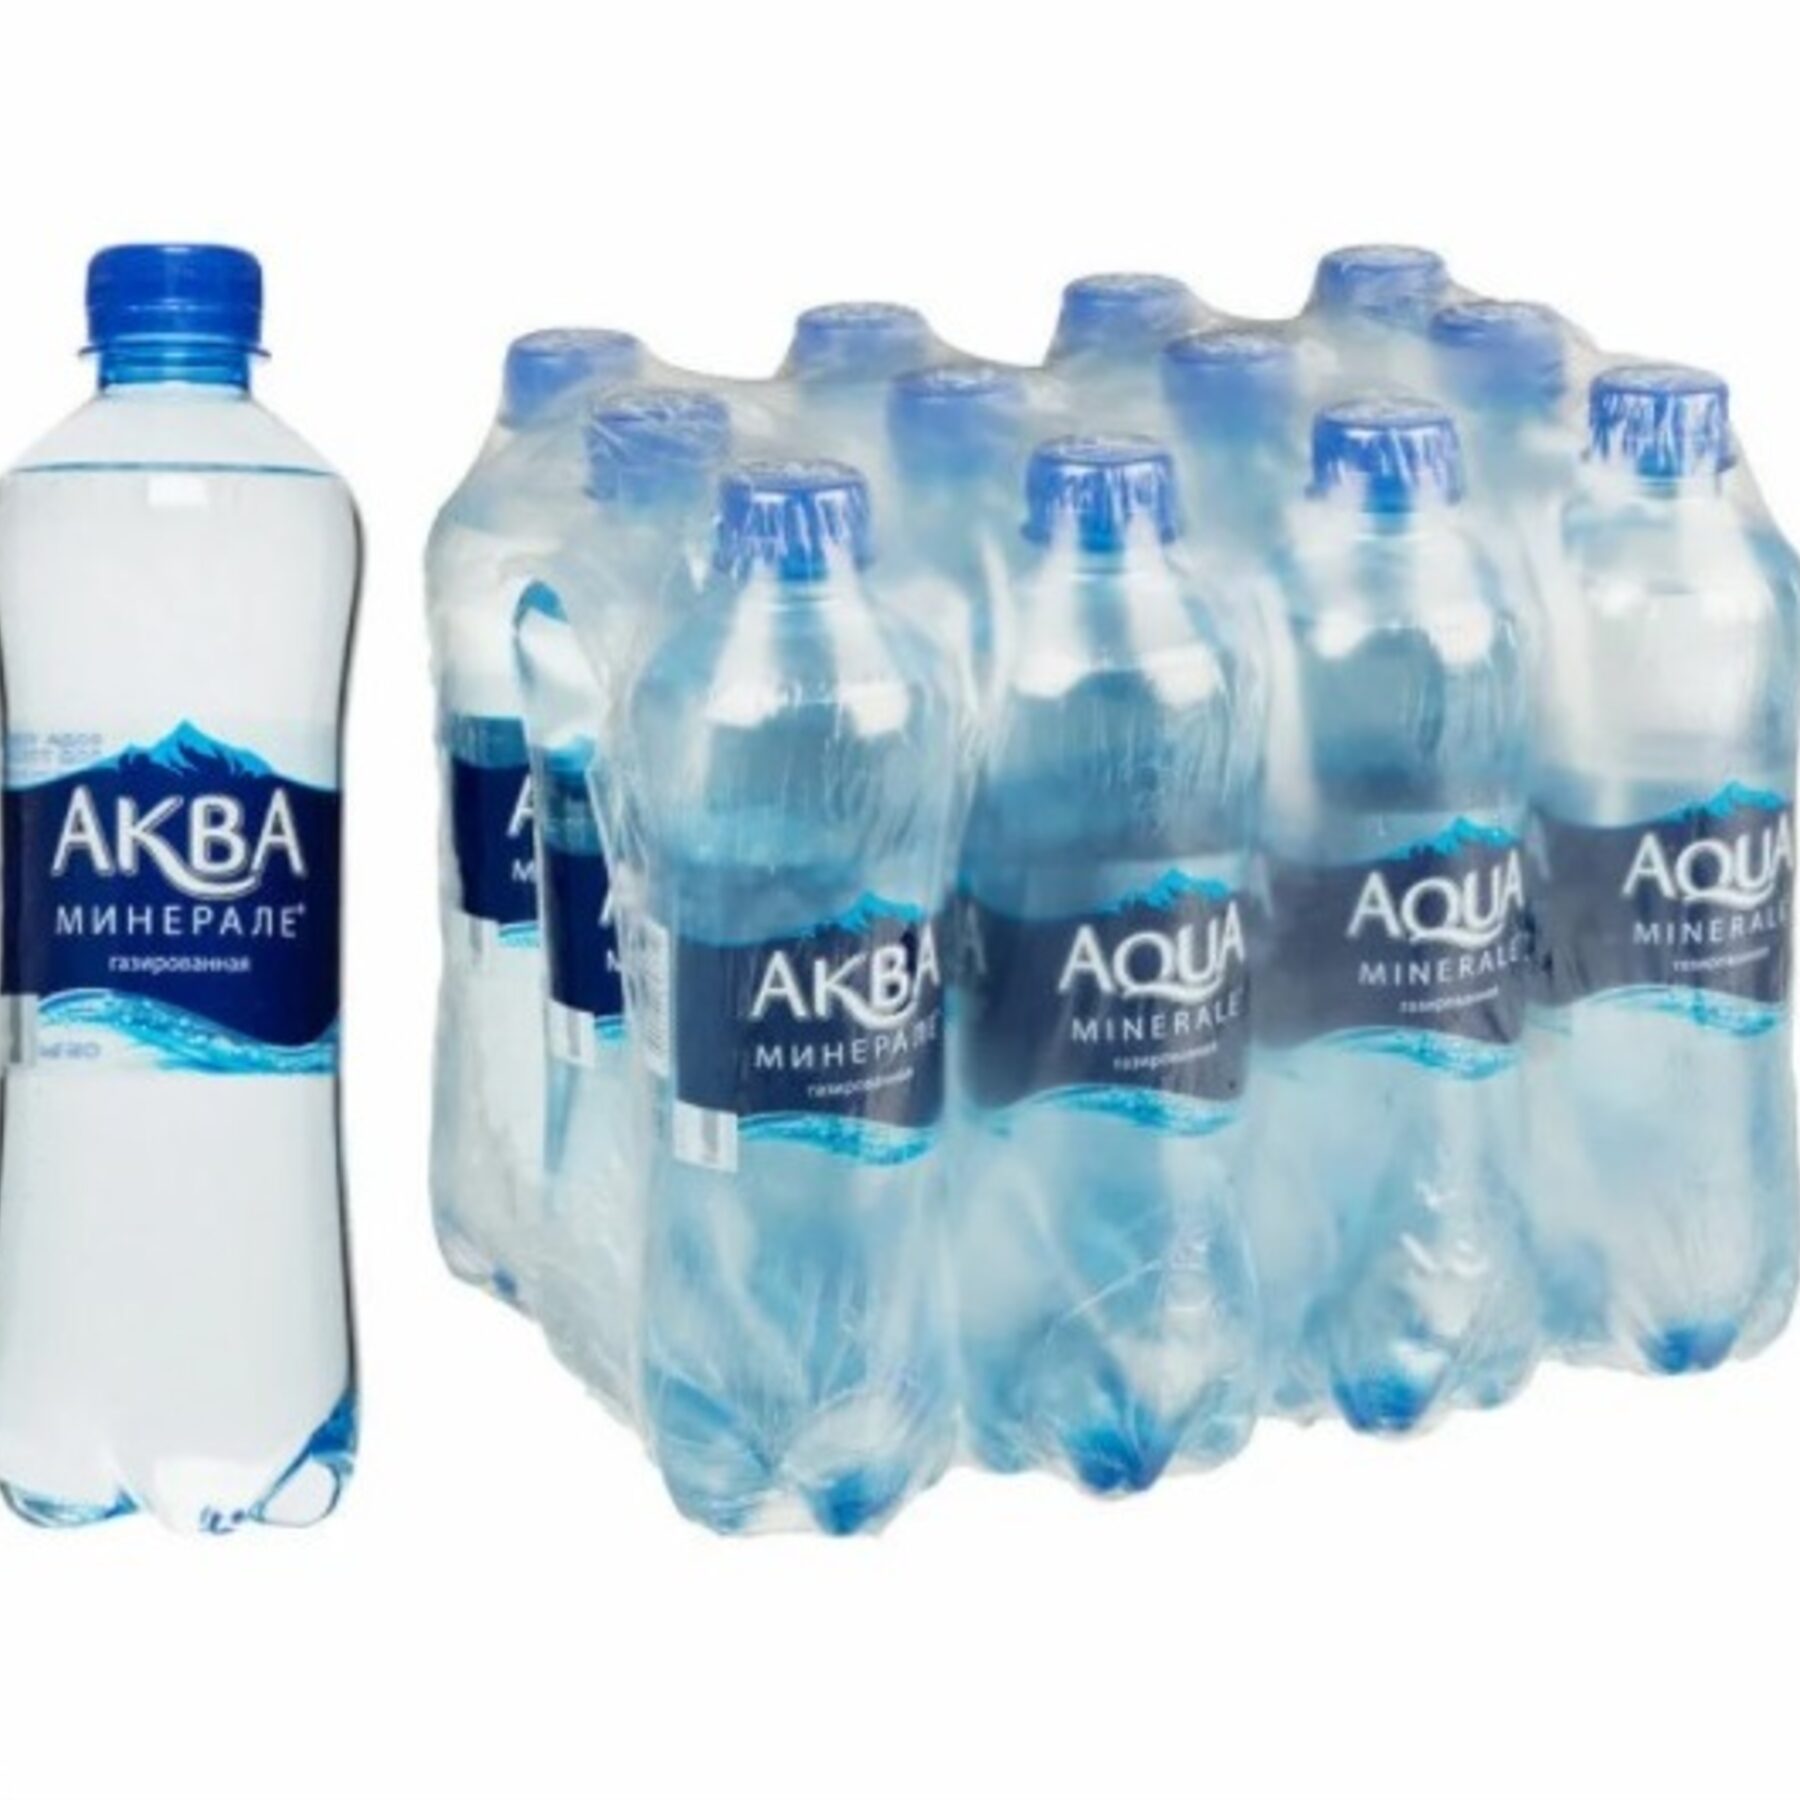 Бутылка негазированной воды. Aqua minerale вода питьевая ГАЗ 0.5Л. Аква минер ГАЗ 0,5. Aqua minerale вода 0.5. Вода Аква Минерале газированная 0,5л.